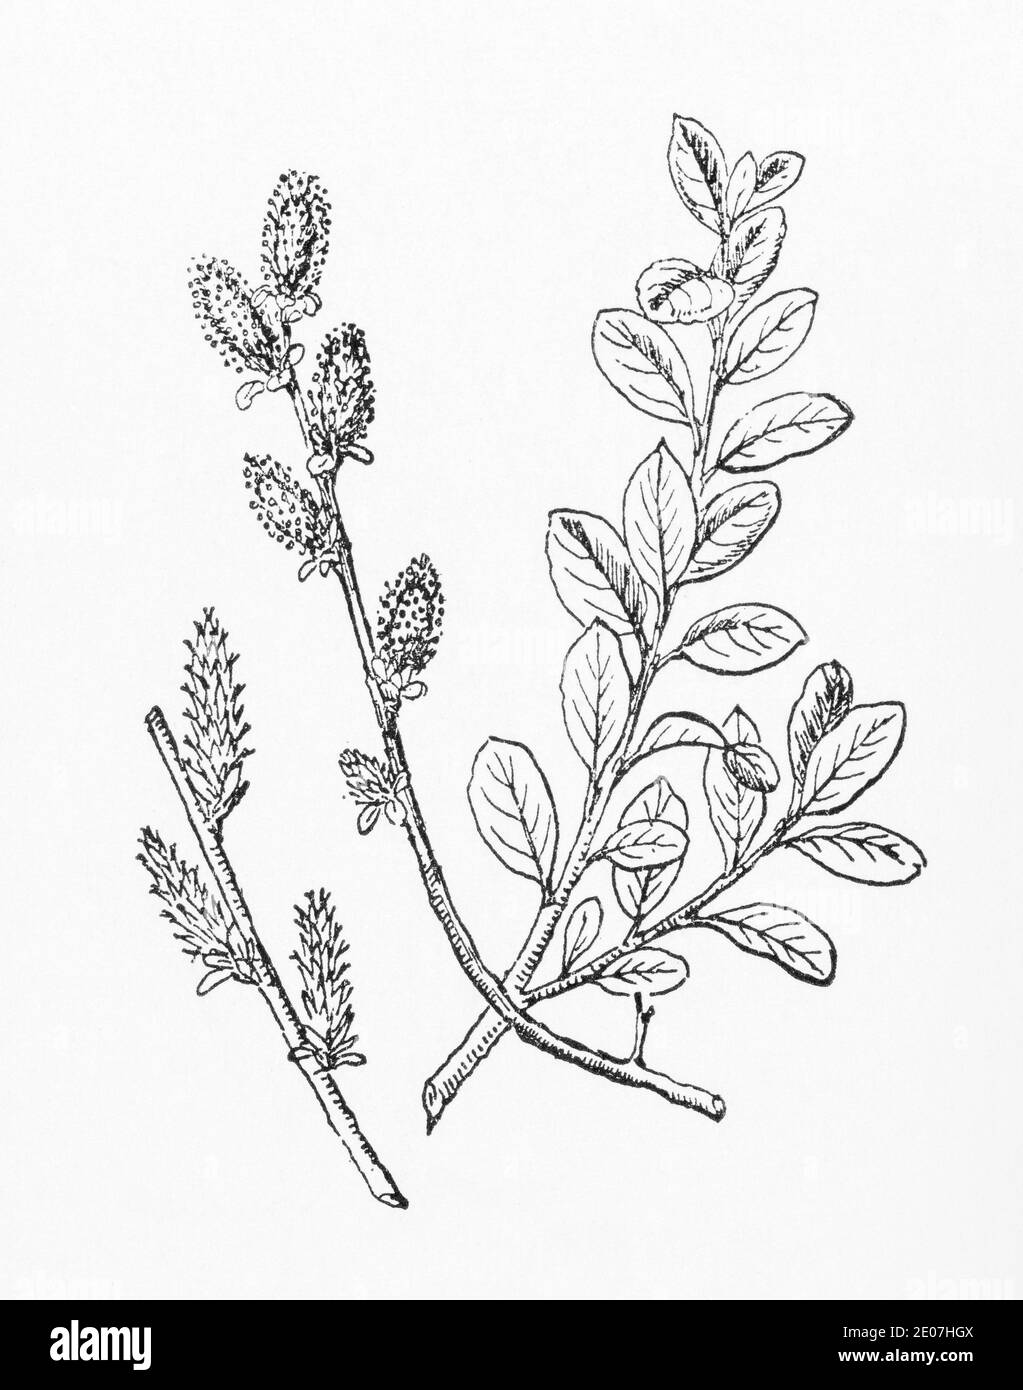 Alte botanische Illustration Gravur von Kriechweide, Zwergweide / Salix repens. Traditionelle Heilkräuter Pflanze. Siehe Hinweise Stockfoto